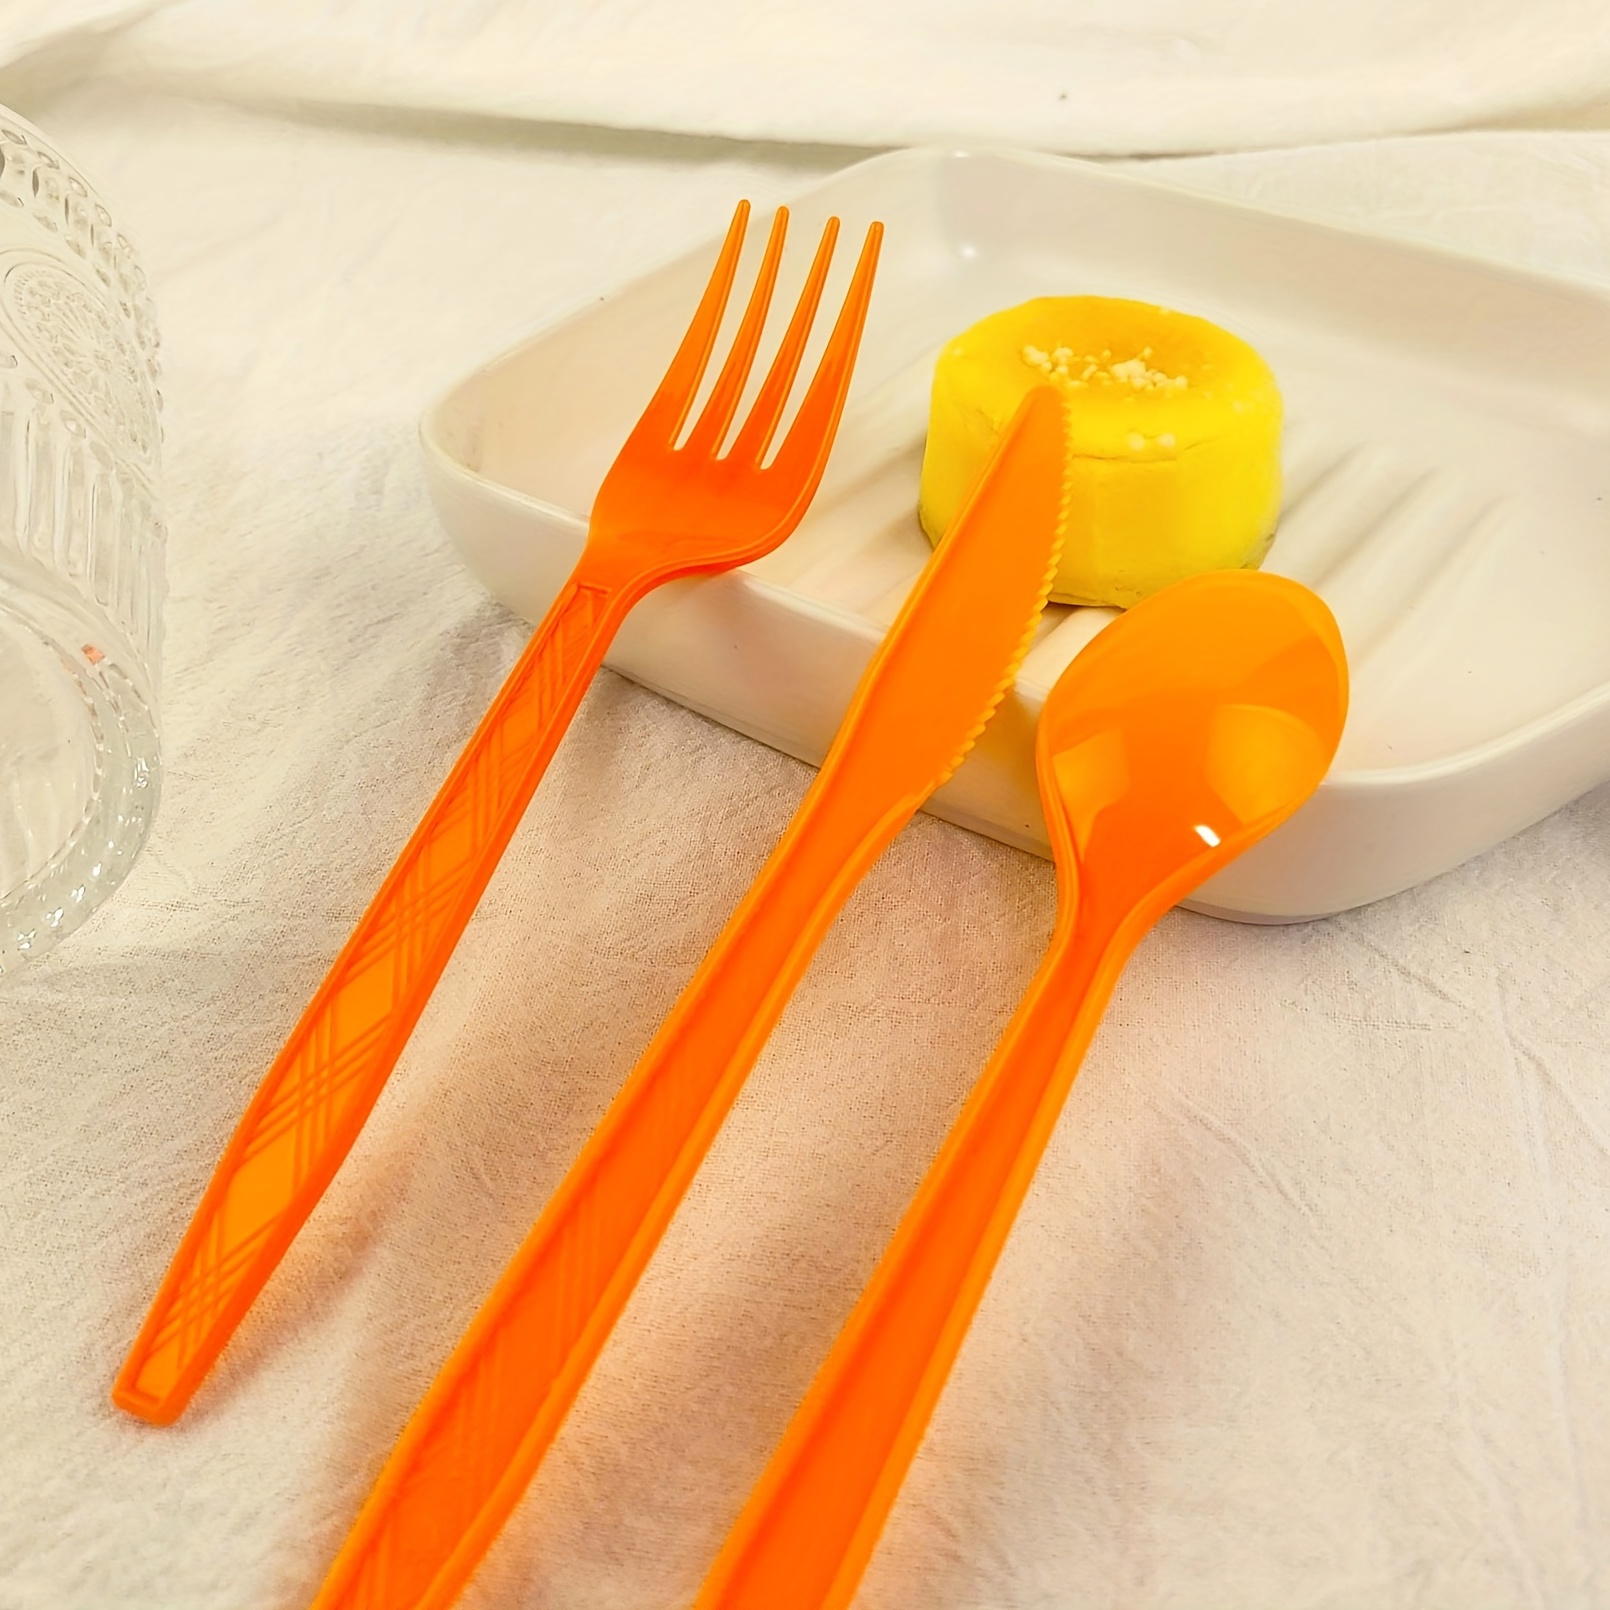 Platos De Vajilla De Plástico Desechables Tenedores Cucharas